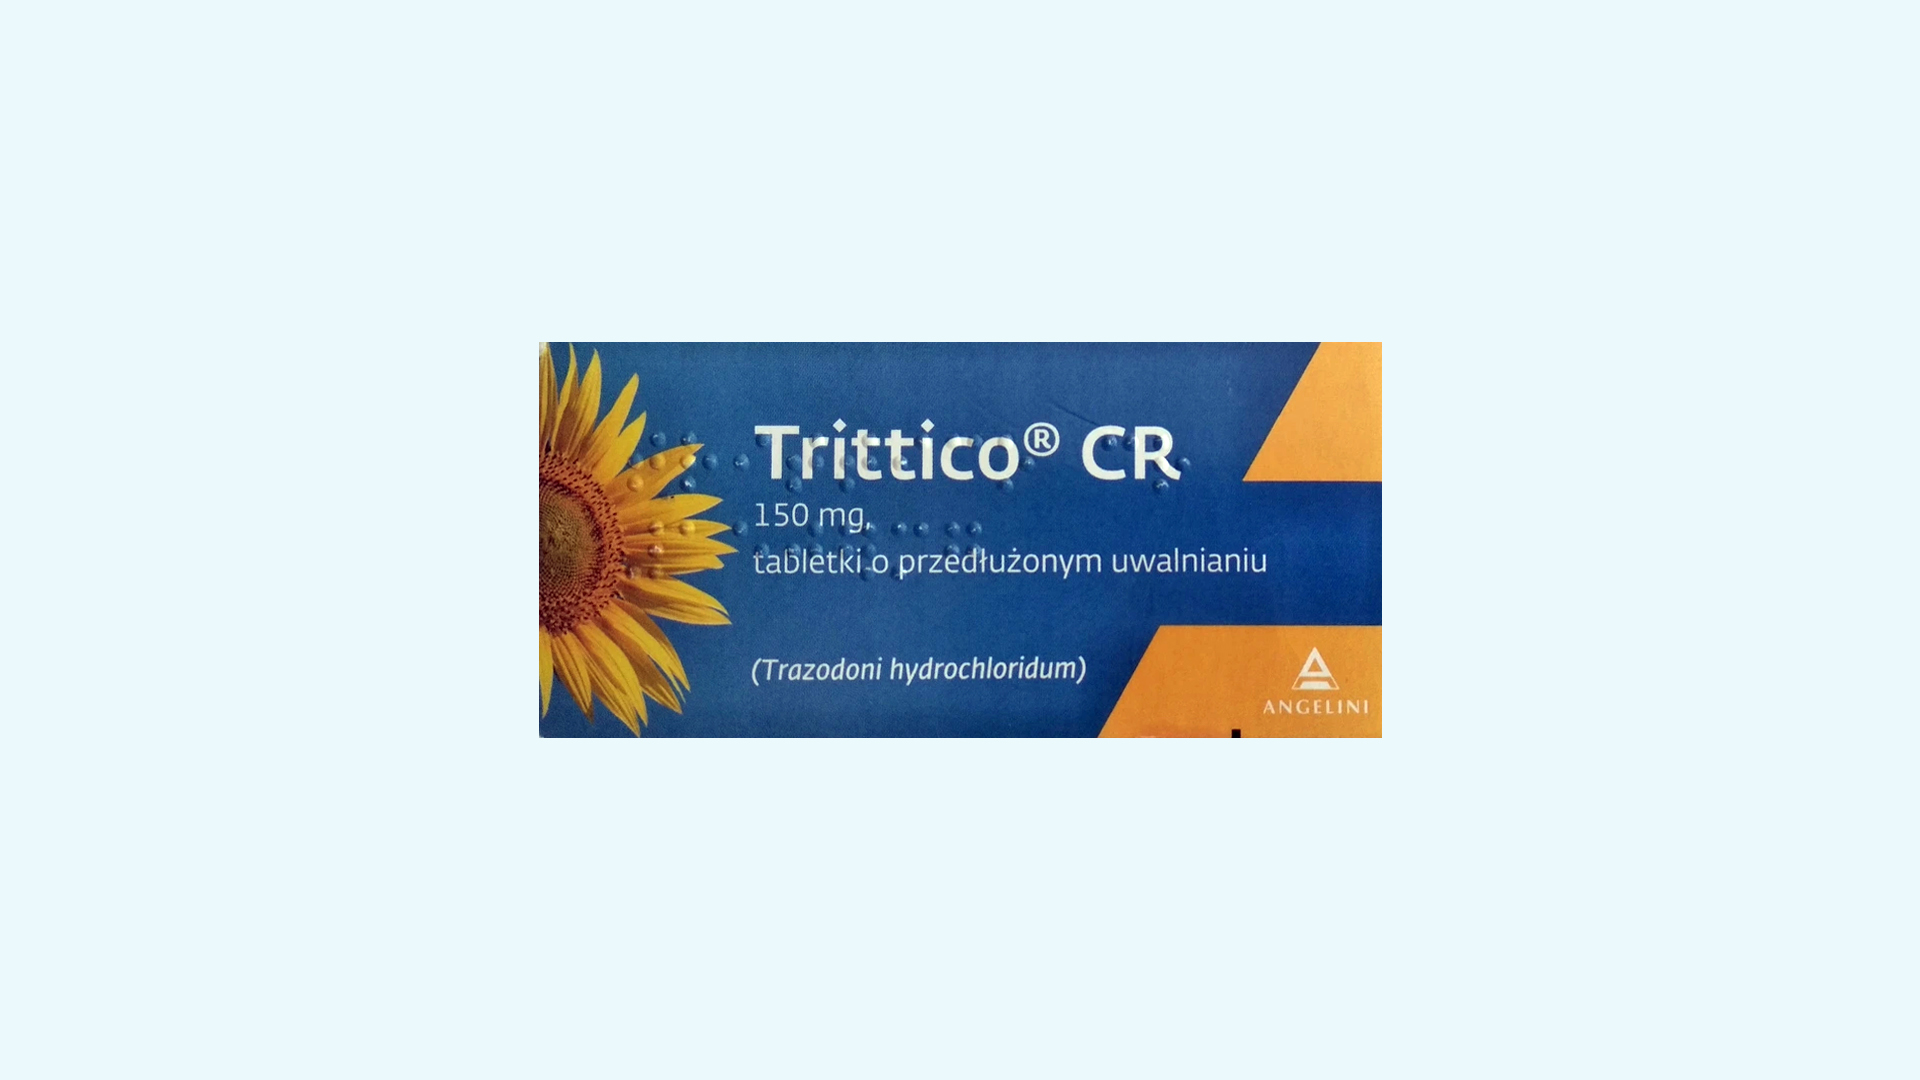 Trittico CR – informacje o leku, dawkowanie oraz przeciwwskazania